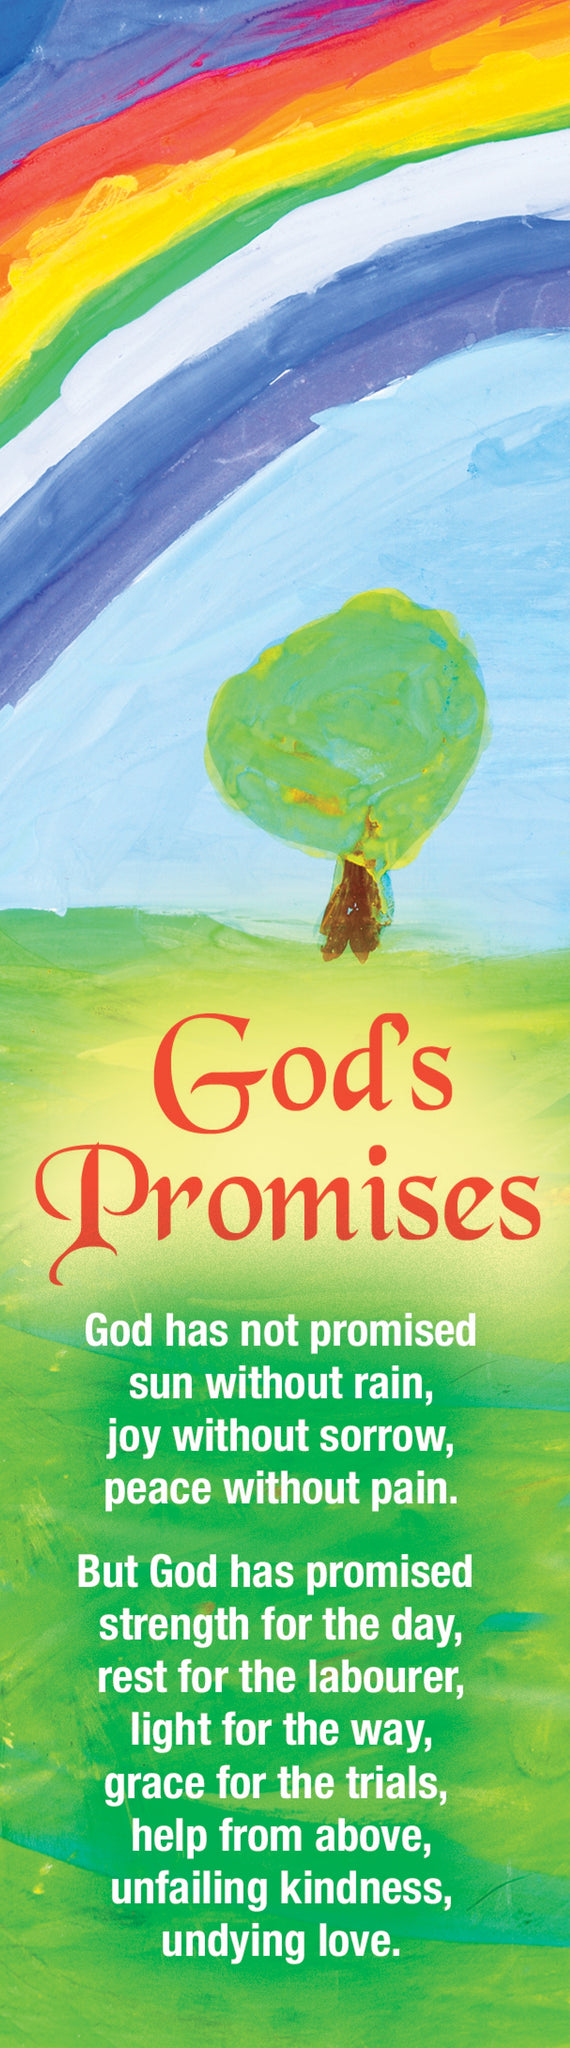 Bookmark - God's PromisesBookmark - God's Promises